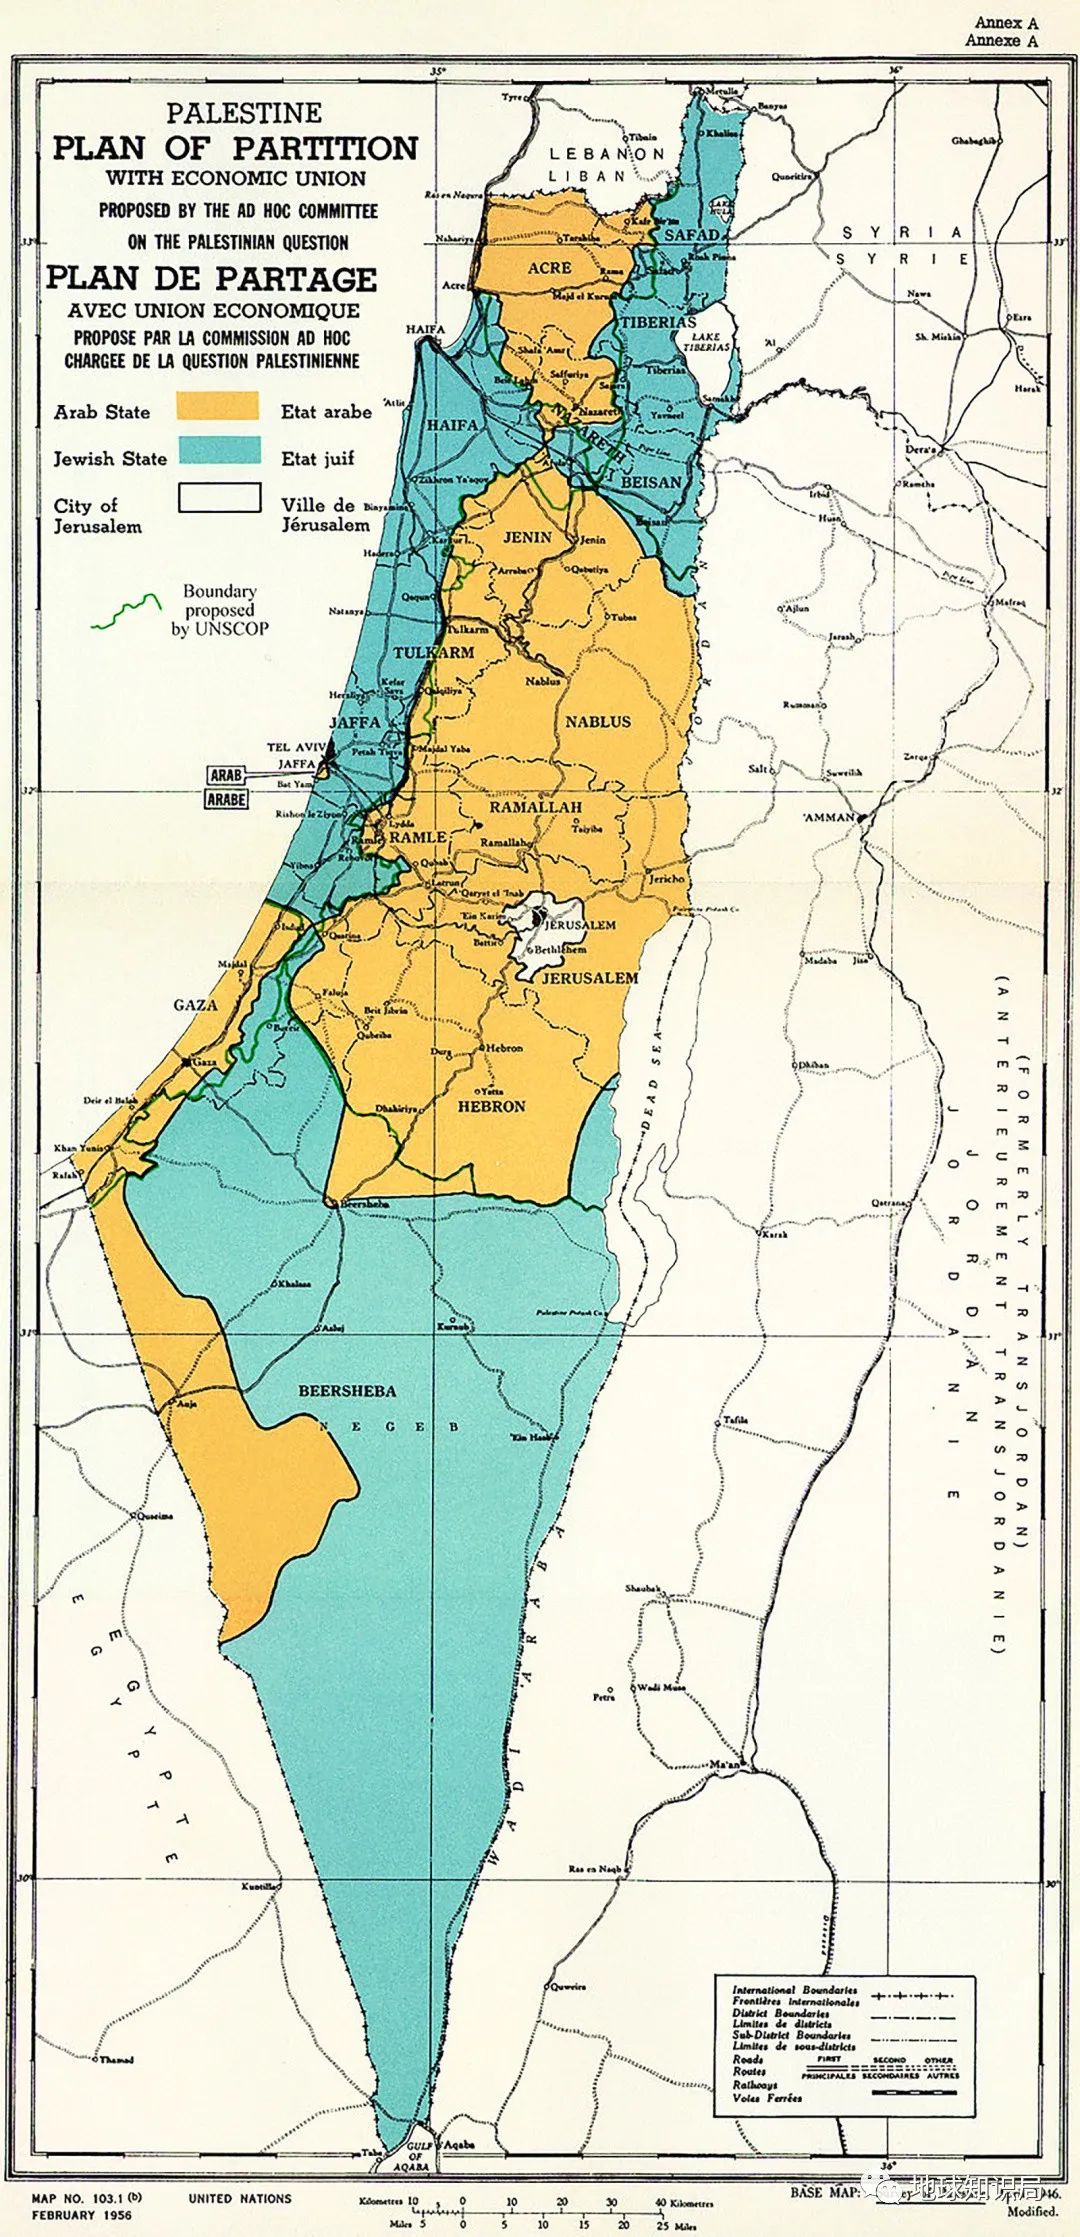 1947年11月29日通过的联合国第181(ii)号决议中的《联合国巴勒斯坦